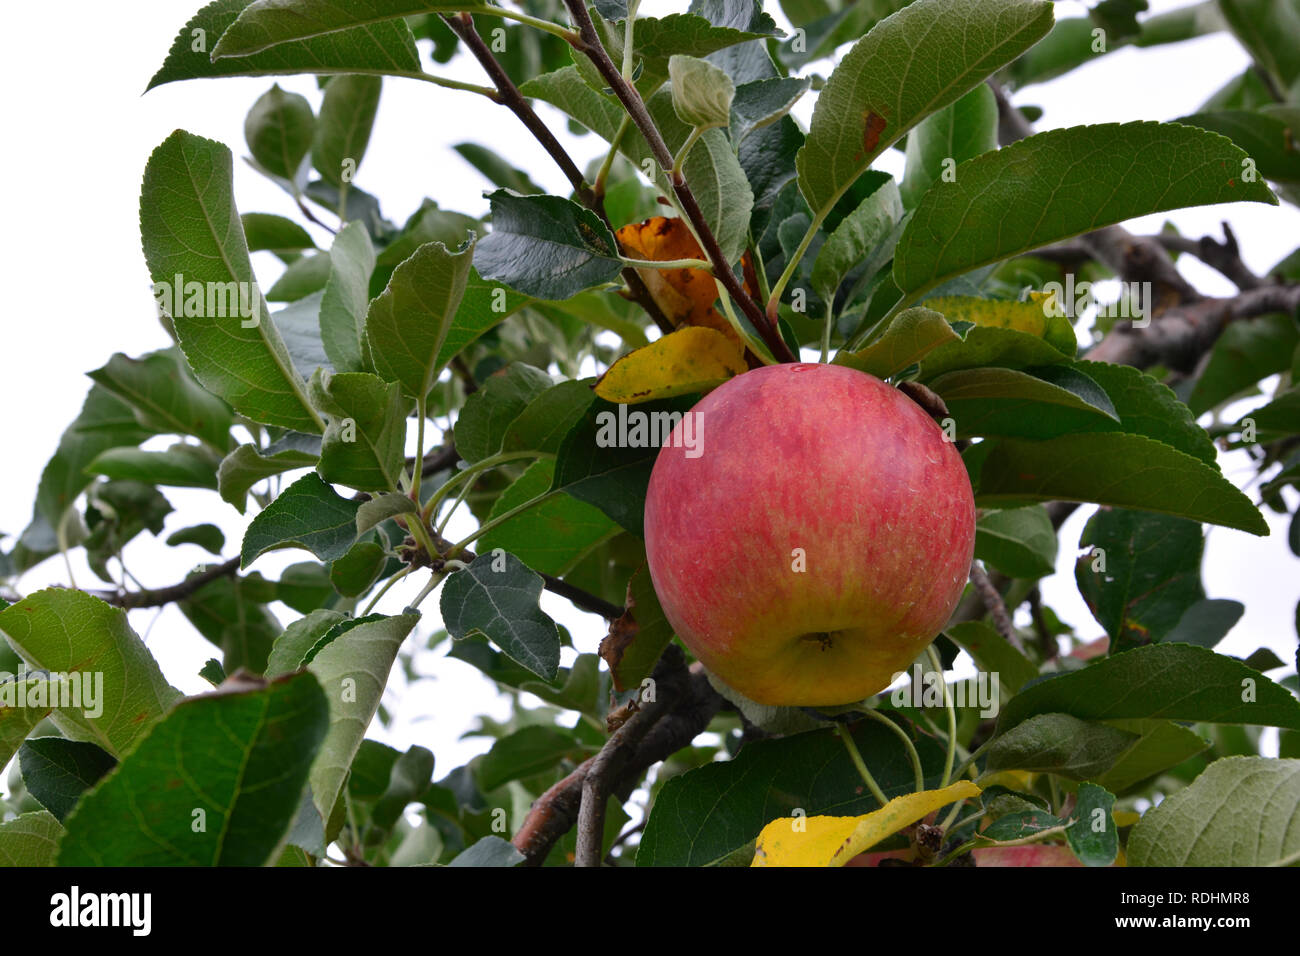 Cripps pink apples immagini e fotografie stock ad alta risoluzione - Alamy